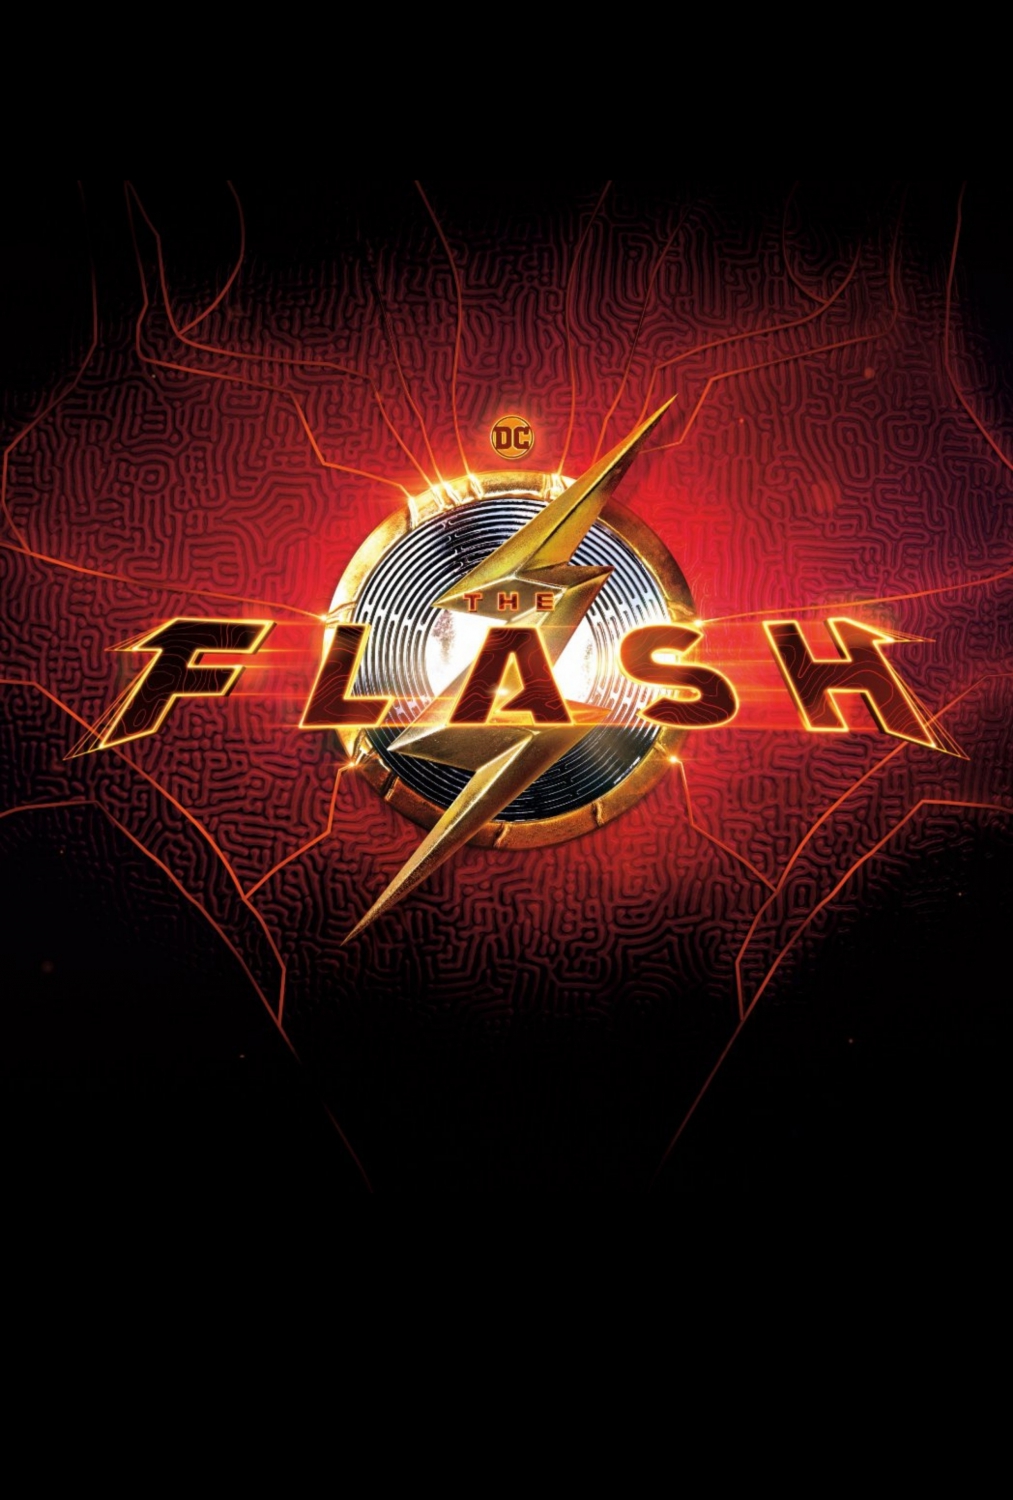 Flesh / The Flash 1, 8-sezon barcha qismlari (rus tilida)